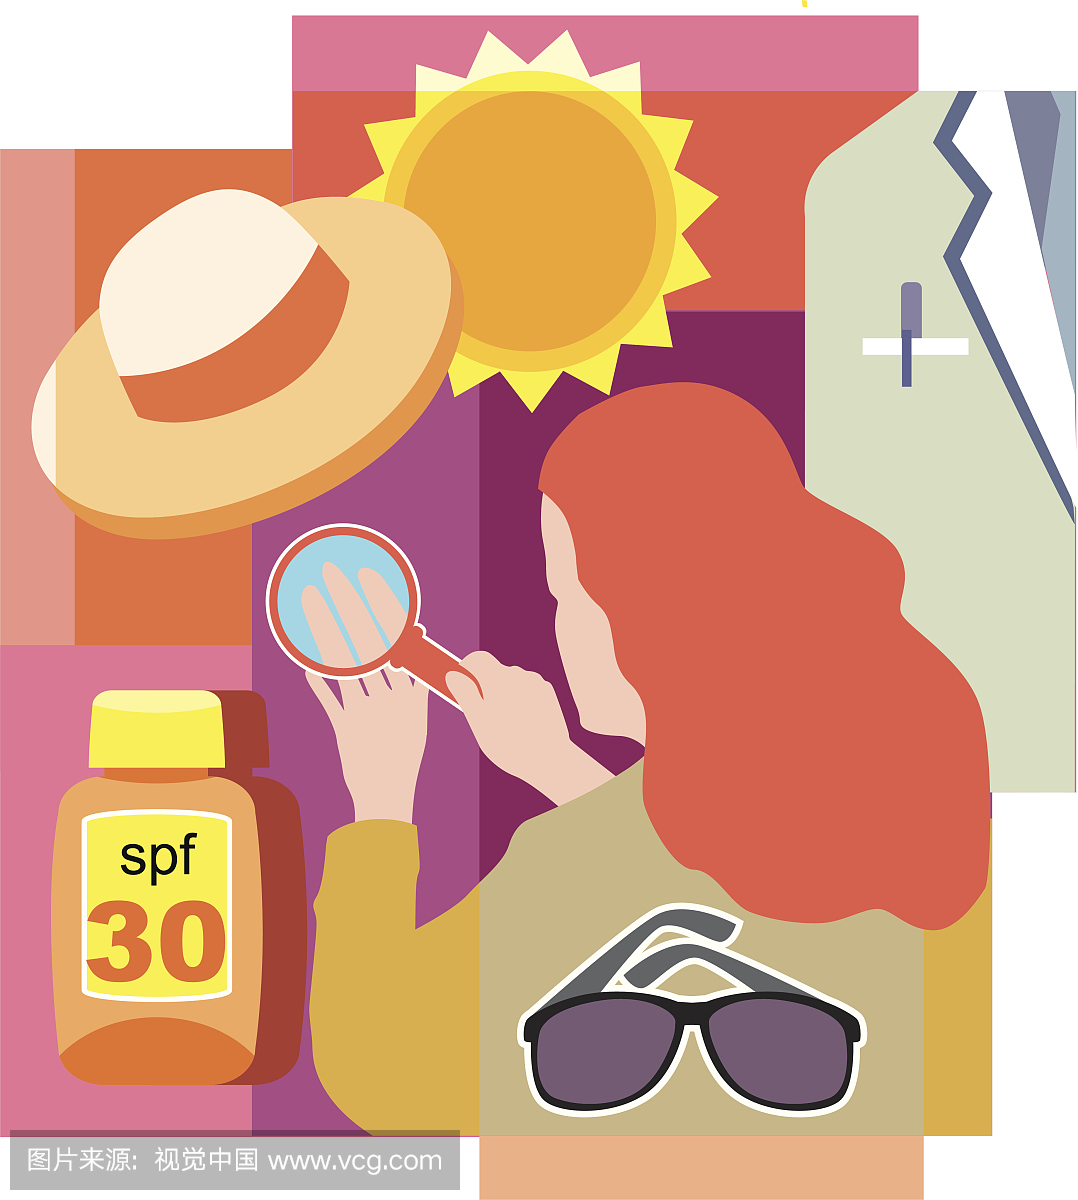 阳的拼贴,帽子,医生白色的外套,太阳镜,防晒霜和